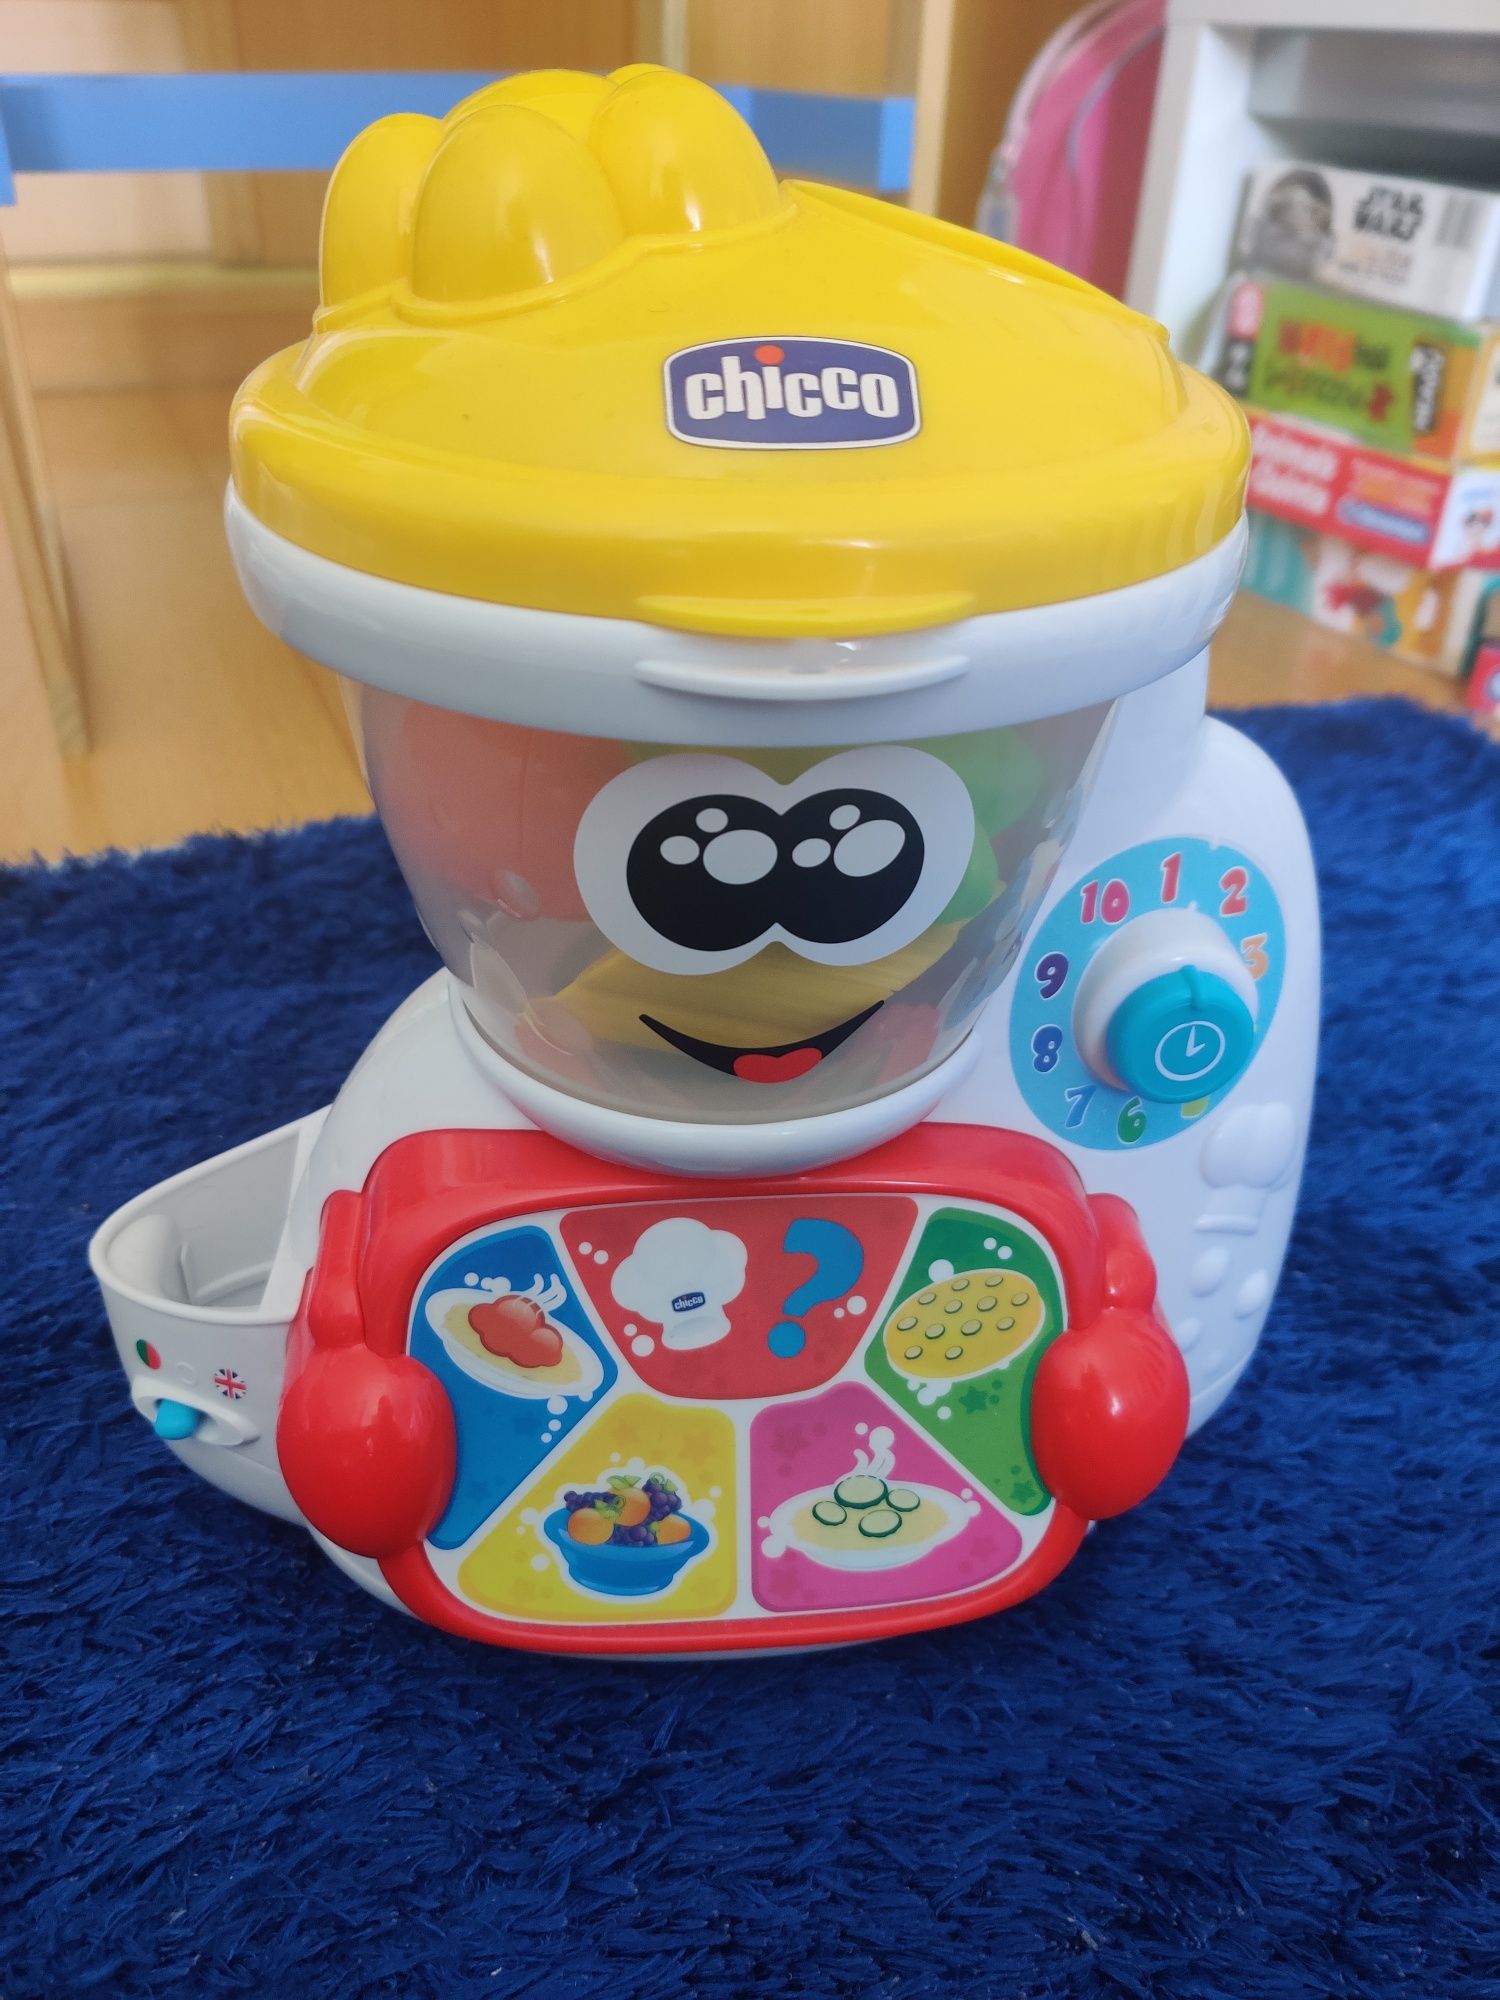 Brinquedo Chicco, robot de cozinha